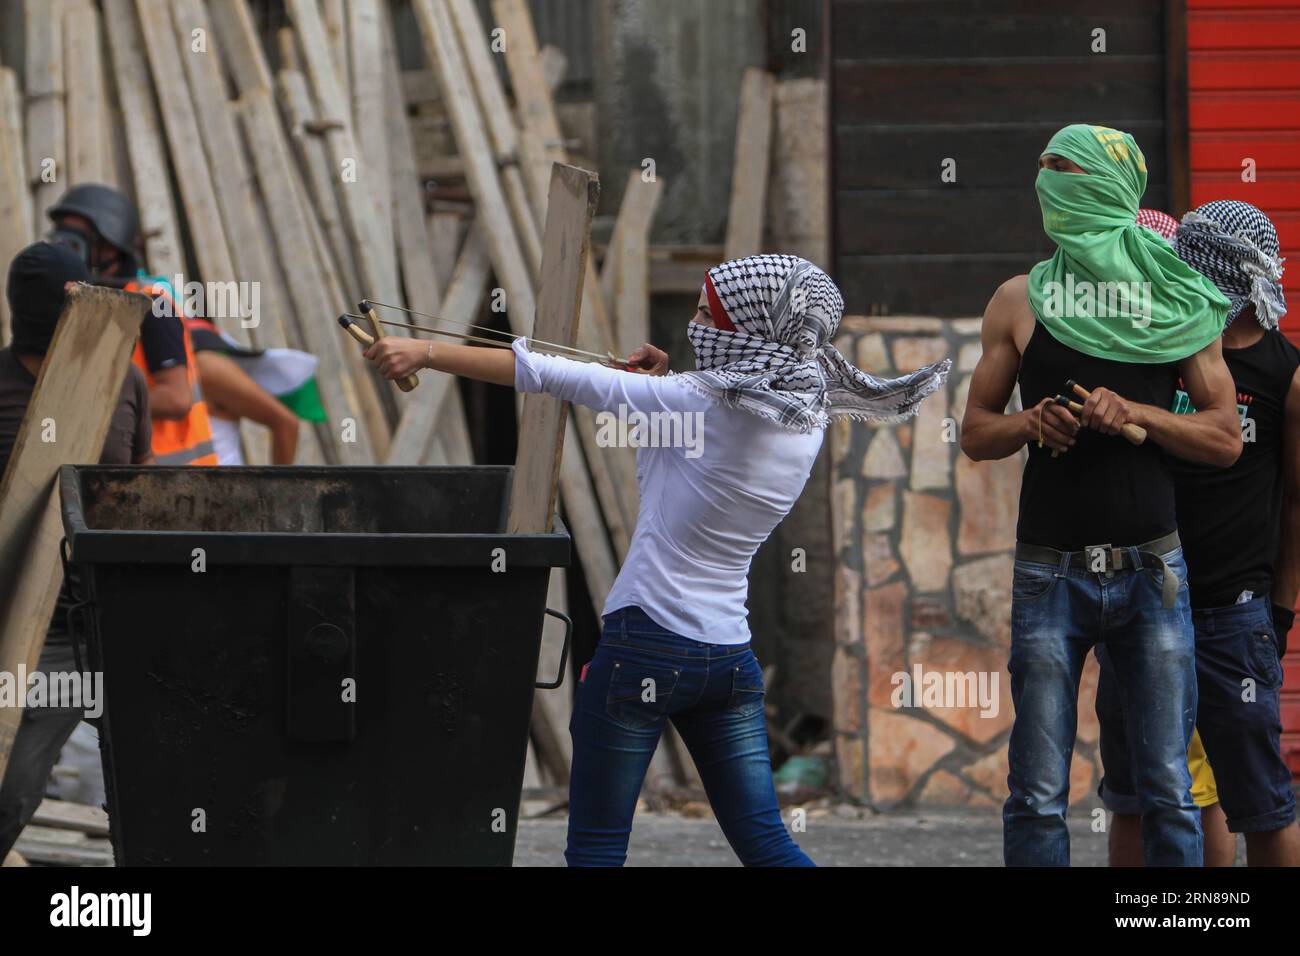 AKTUELLES ZEITGESCHEHEN Unruhen im Westjordanland (151014) -- BELÉN, Un manifestante palestino dispara piedras con una honda a soldados israelíes durante enfrentamientos en la ciudad de Belén, Cisjordania, el 13 de octubre de 2015. ) Noticias ACTUALIDAD AMBIENTE-BELLEM-CONFLICES LuayxSababa PUBLICATIONxNOTxINxCHN NOTICIAS ACTUALIDAD RESULTADOS EN JORDAN OESTE 151014 BELLEM Un manifestante PALESTINO dispara piedras con una honda A soldados israelíes durante enfrentamientos en la ciudad de CISJORDANIA de Belén EN OCT 13 2015 Oriente Medio Conflictos de Belén LuayxSababa PUBLICATIONxNOTxINxCHN Foto de stock